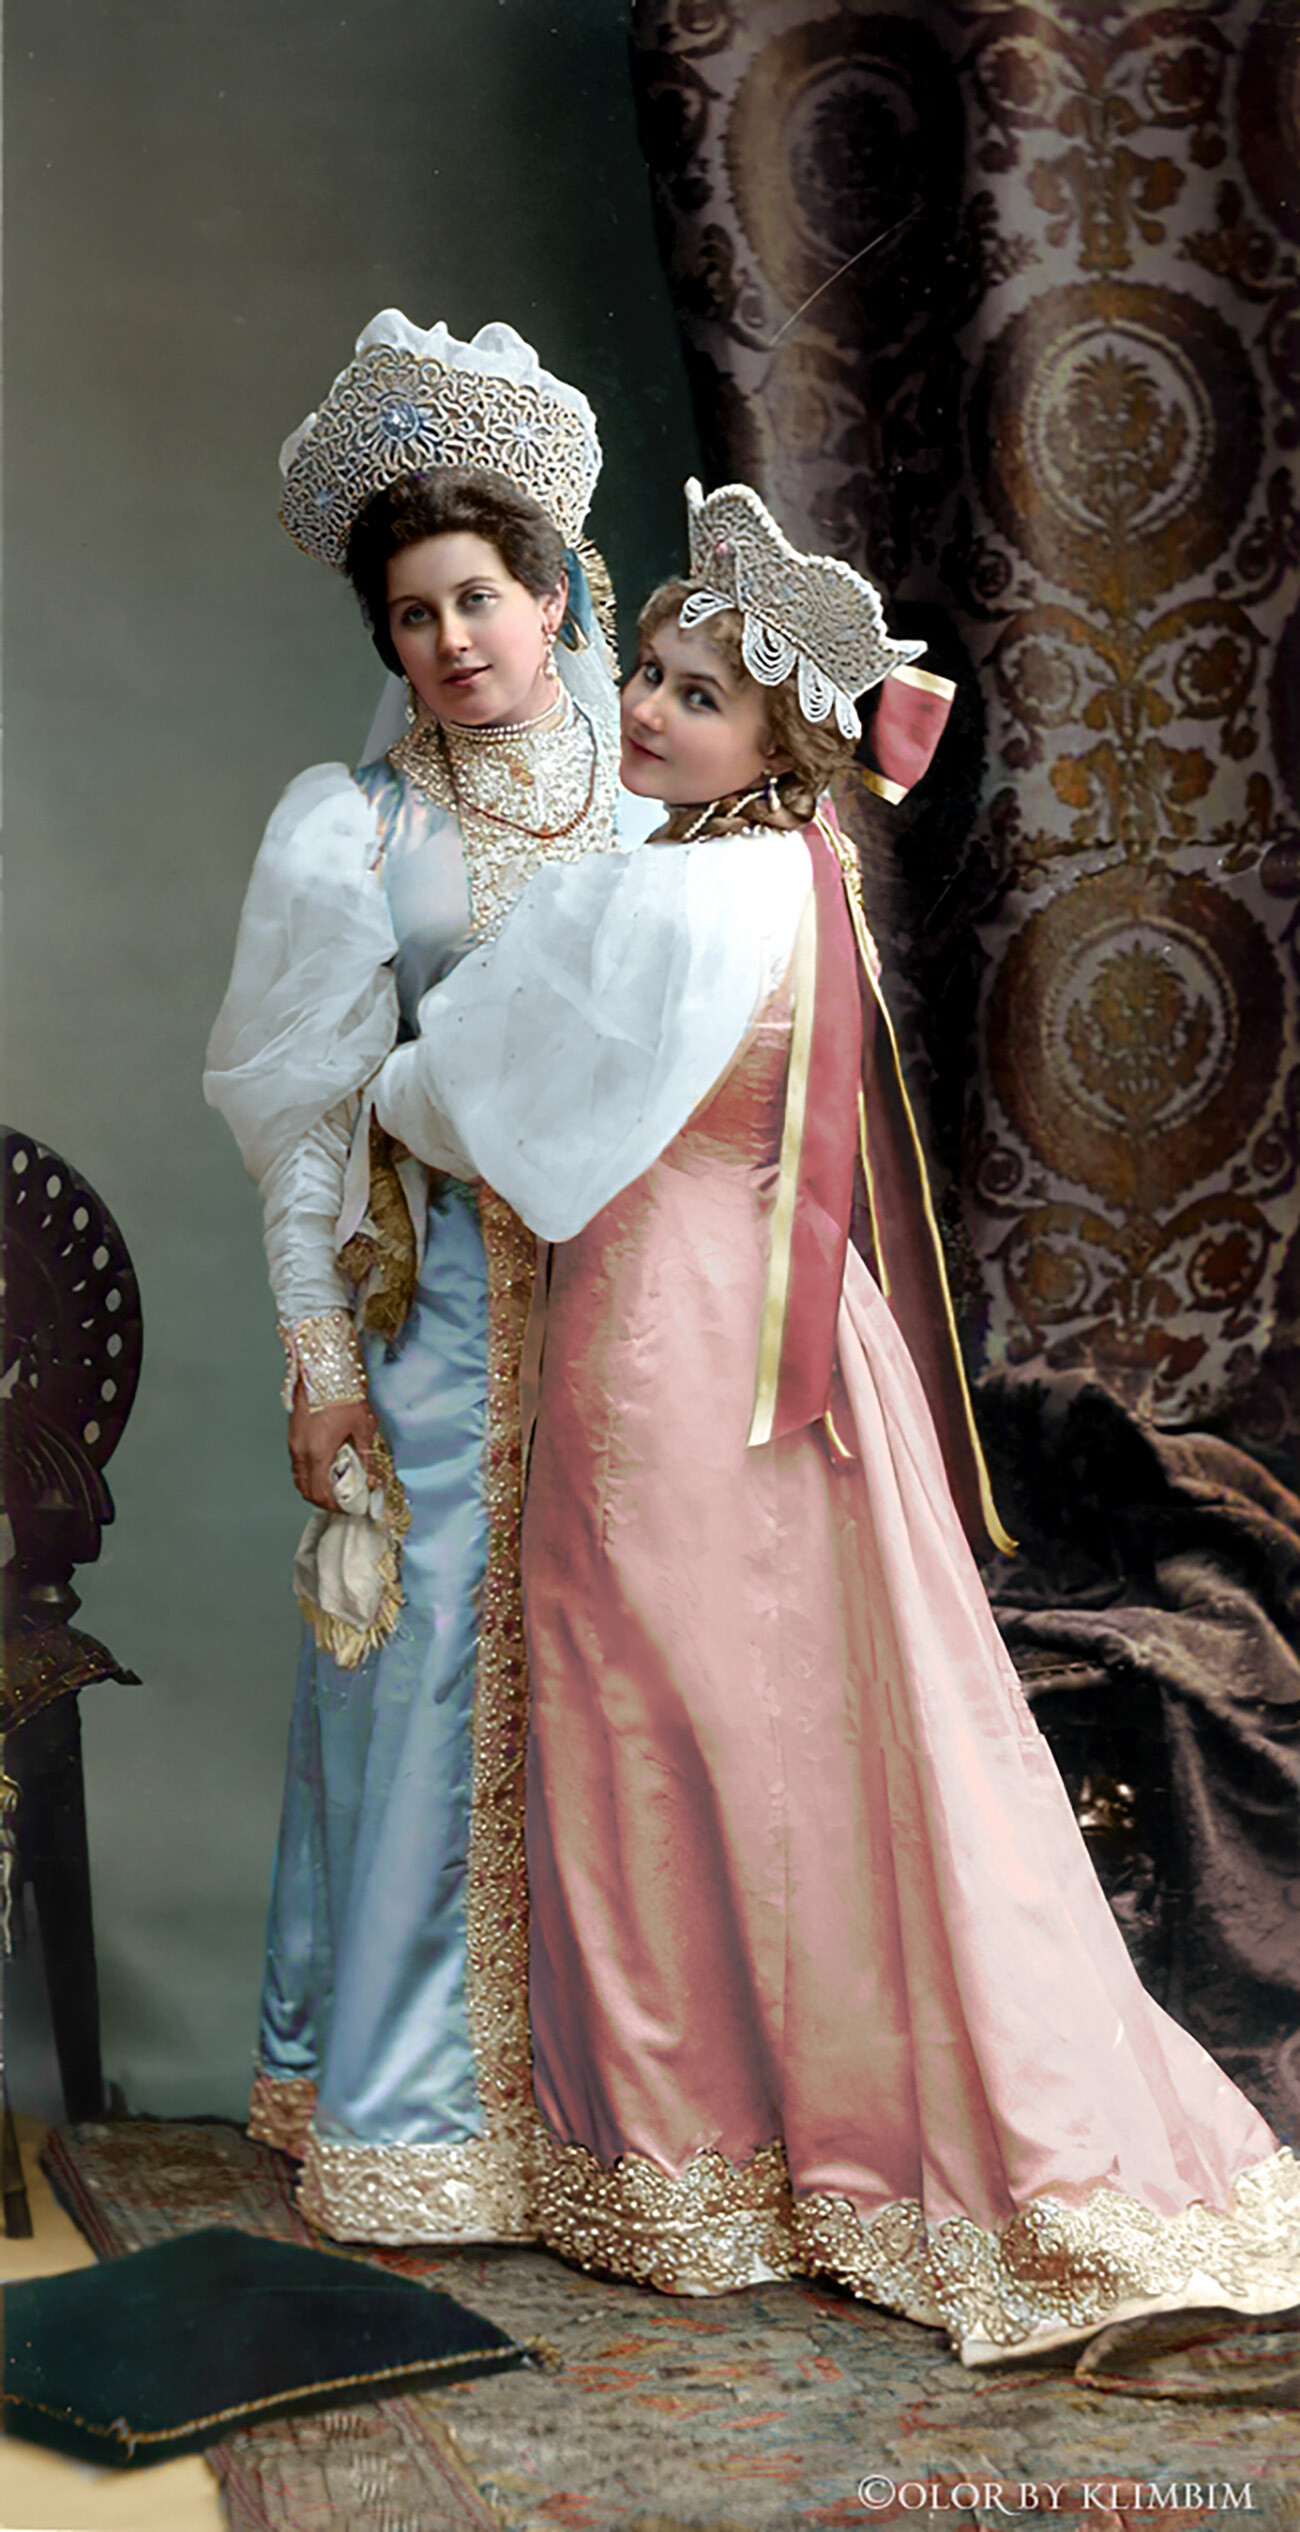 Дворска дама императорке Ана Танајева са сестром